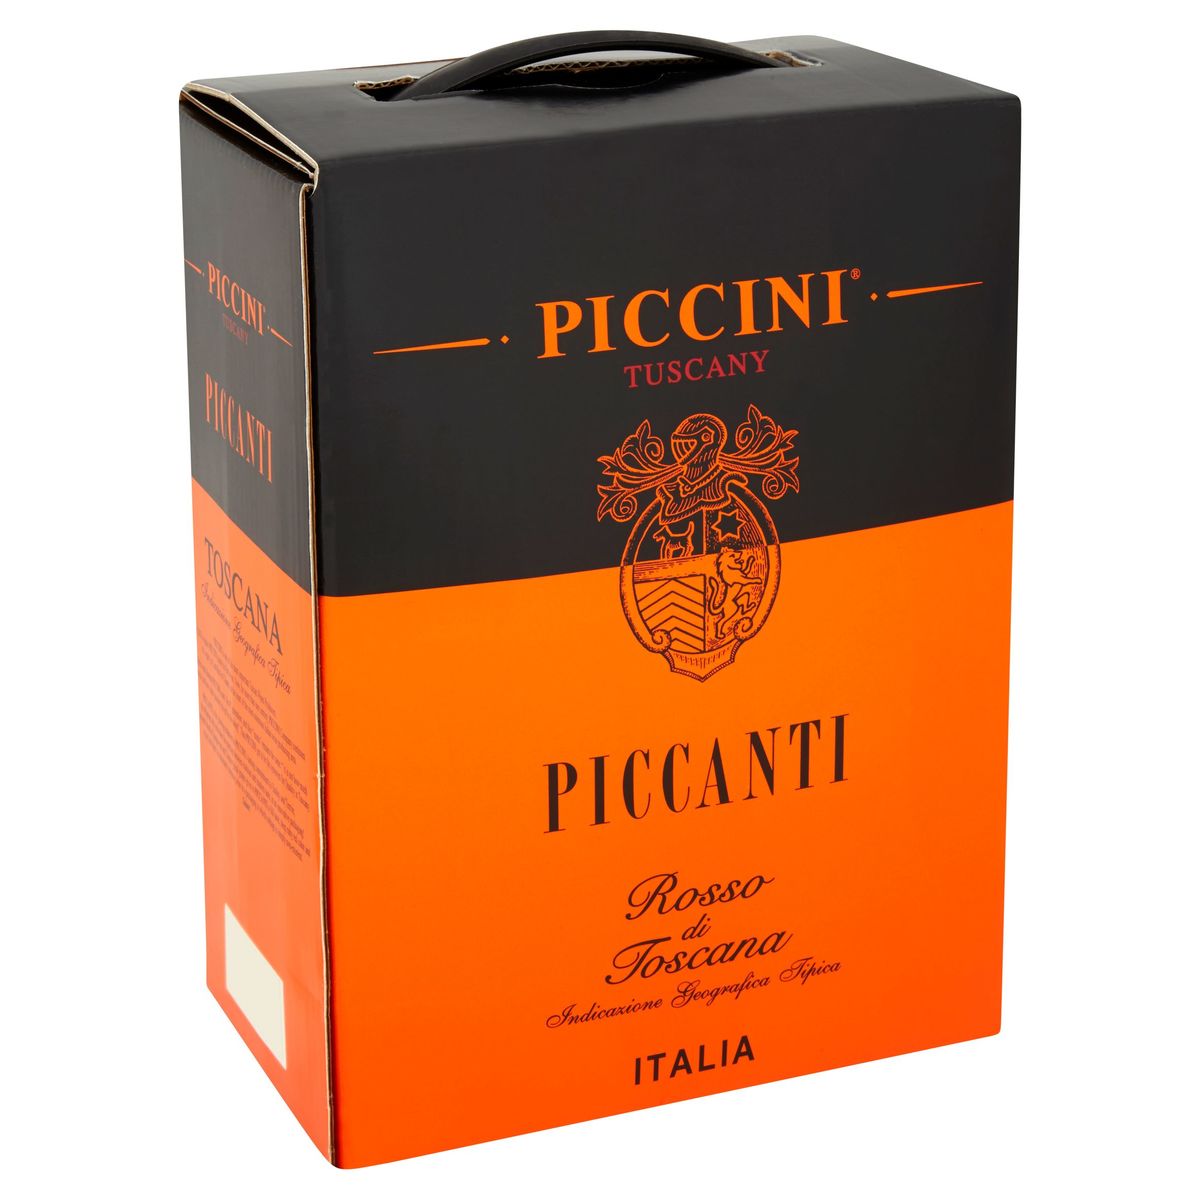 Italië Piccini Tuscany Piccanti rosso di toscana 3000 ml